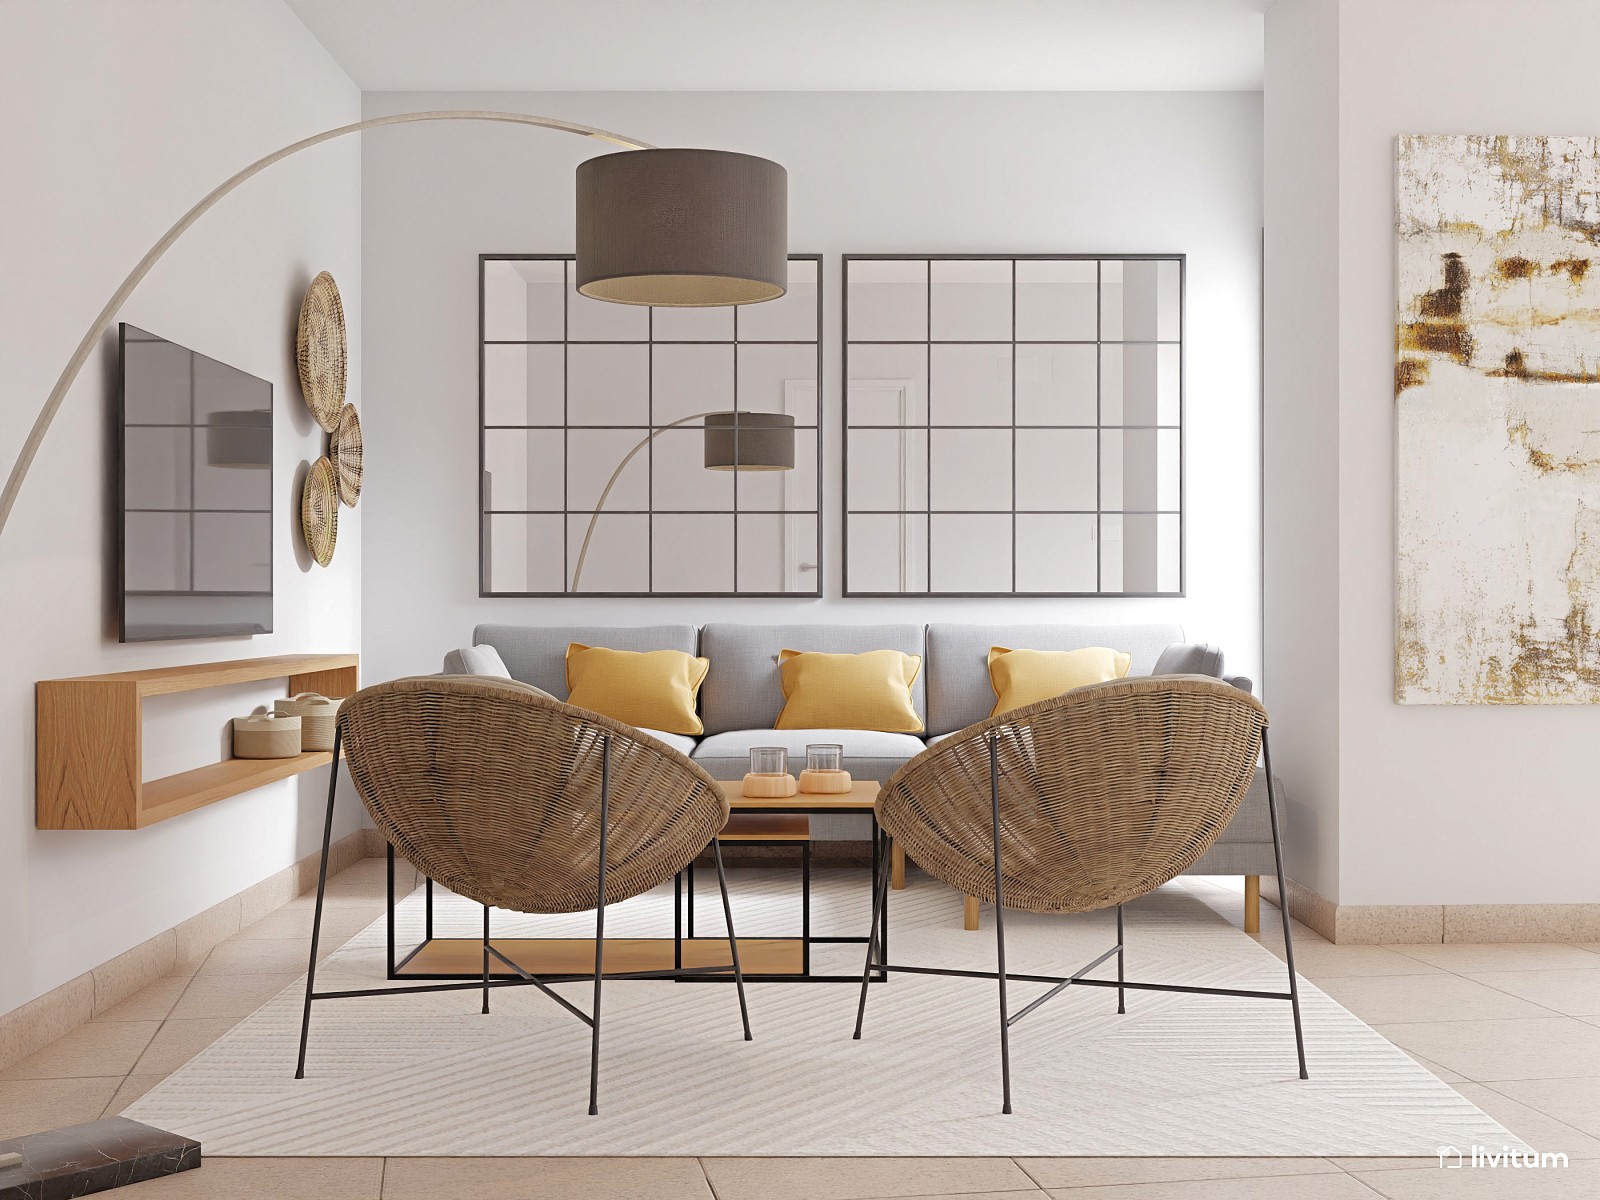 Mueble para salón de estilo moderno en color blanco y negro.